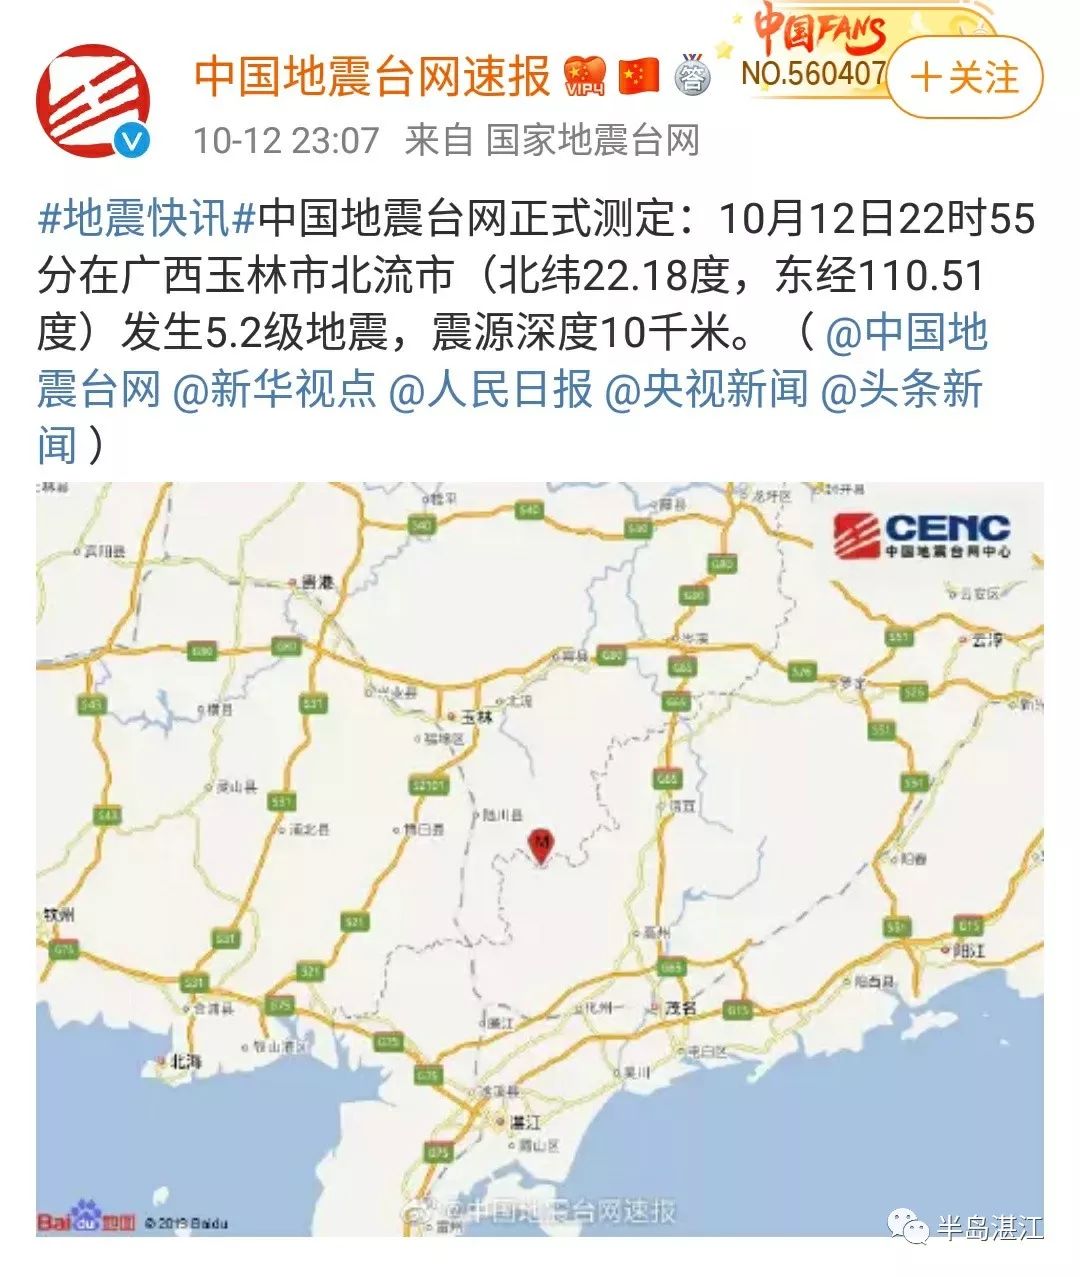 广西玉林市发生5.2级地震!湛江有明显震感!今晚凌晨还有一次余震?图片